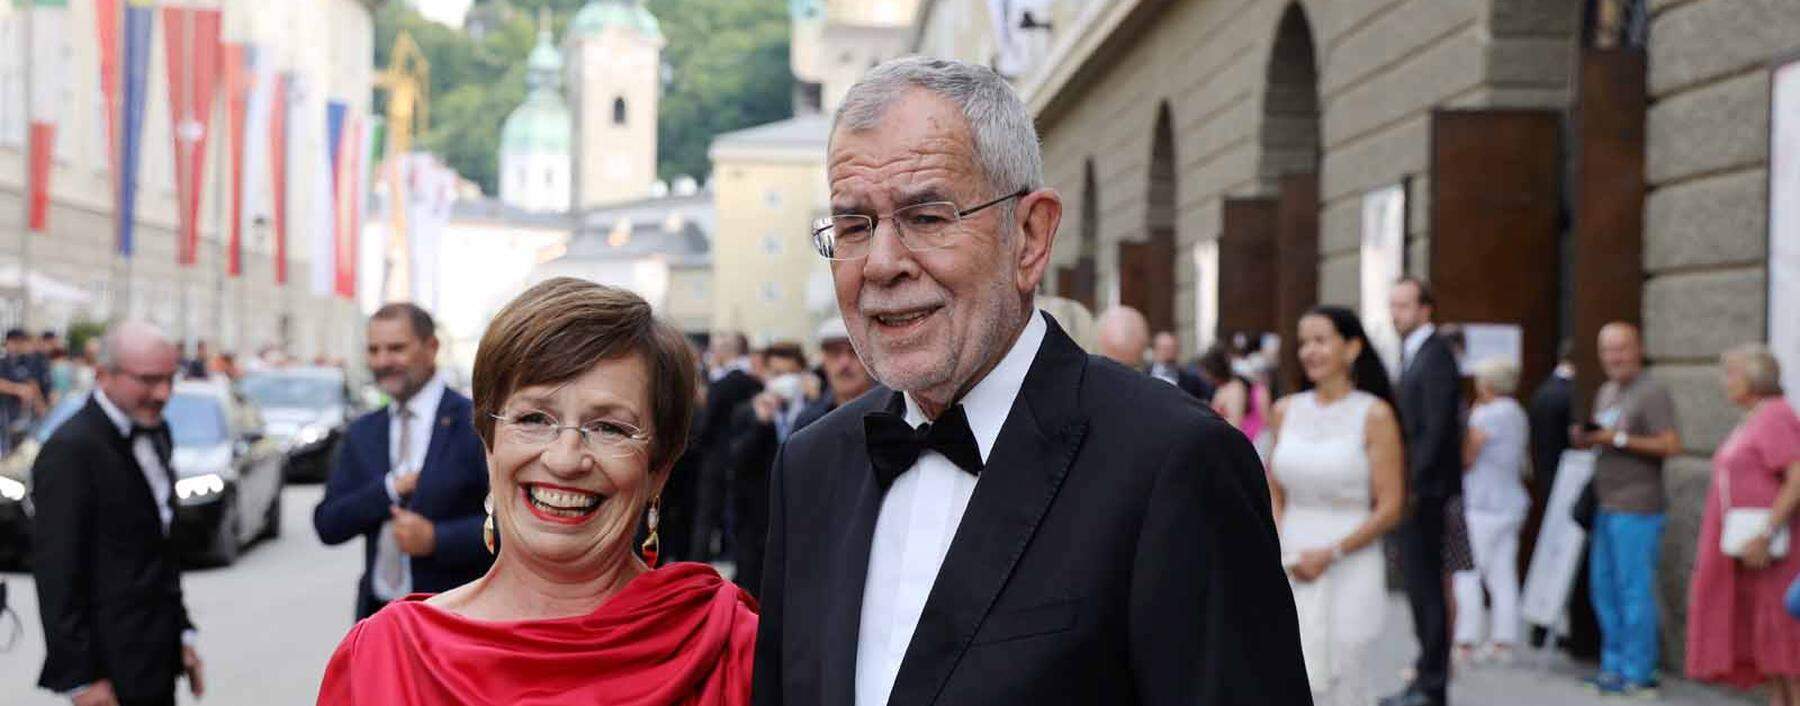 Salzburger Festspiele Don Giovanni Premiere Salzburg, 26. 07. 2021 Alexander van der BELLEN mit Frau Doris - *** Salzbu